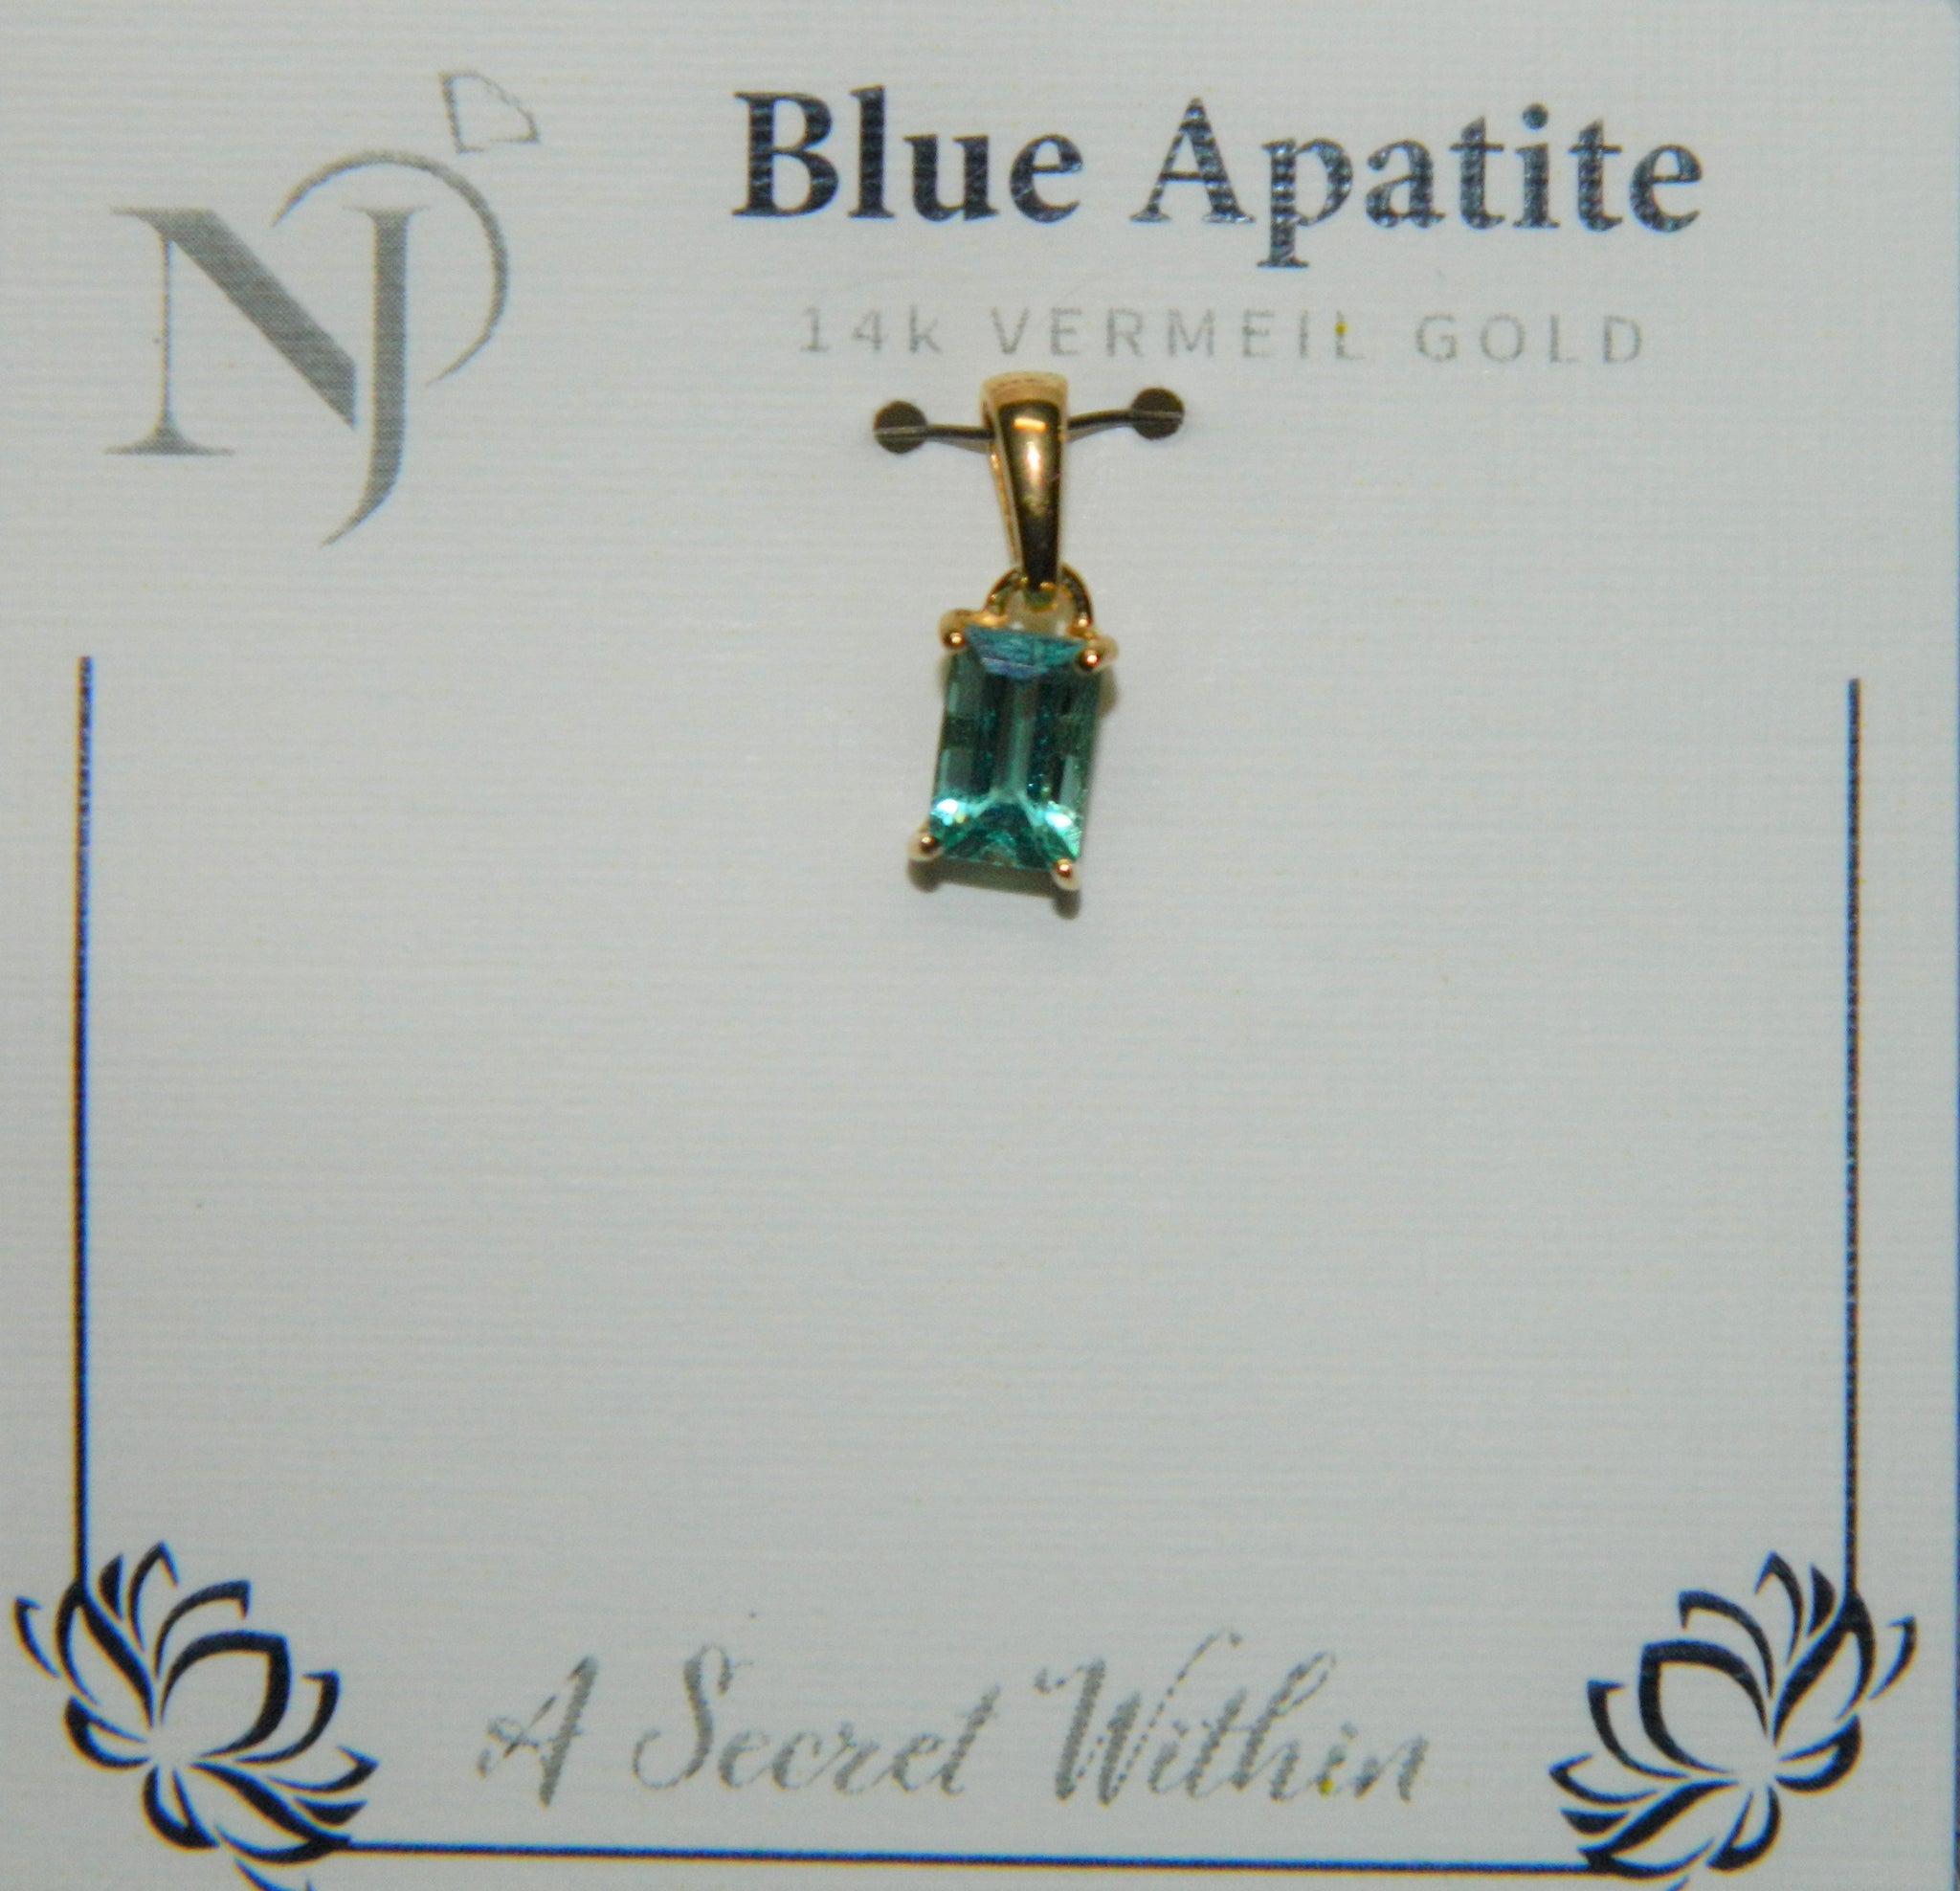 14K Vermeil Gold Pendant Blue Apatite